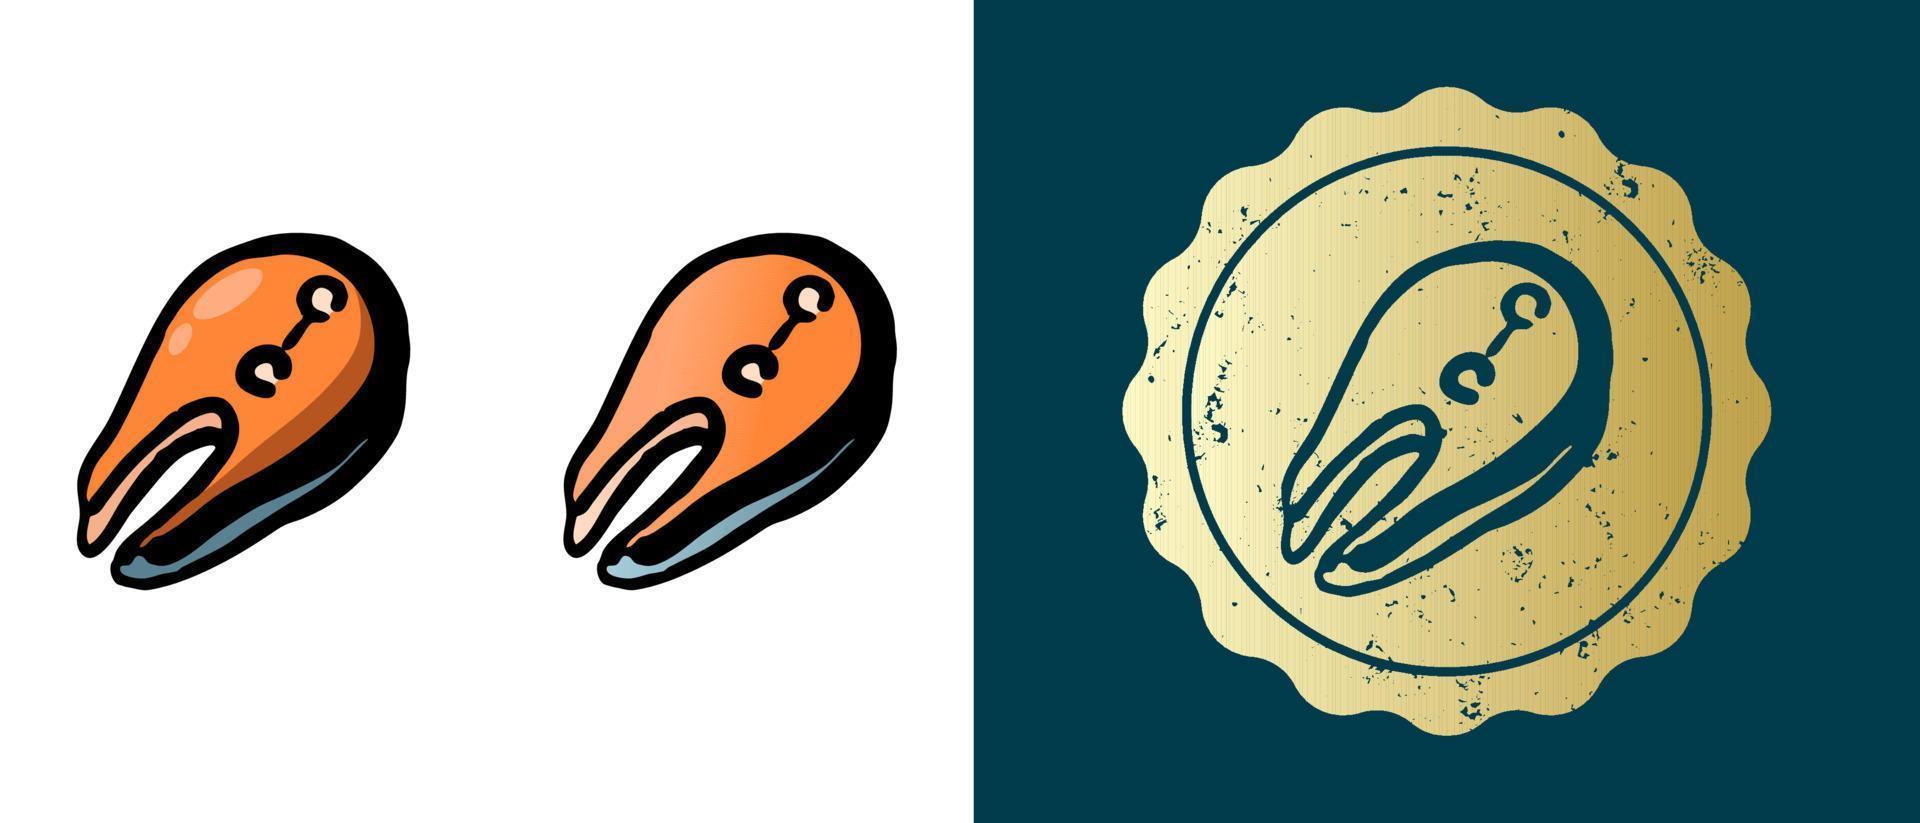 Este es un conjunto de iconos de filete de pescado degradados, contornos y retro. esta es una etiqueta dorada, la etiqueta de filete de salmón. solución elegante para el diseño de envases y sitios web. sello de oro grunge redondo. vector